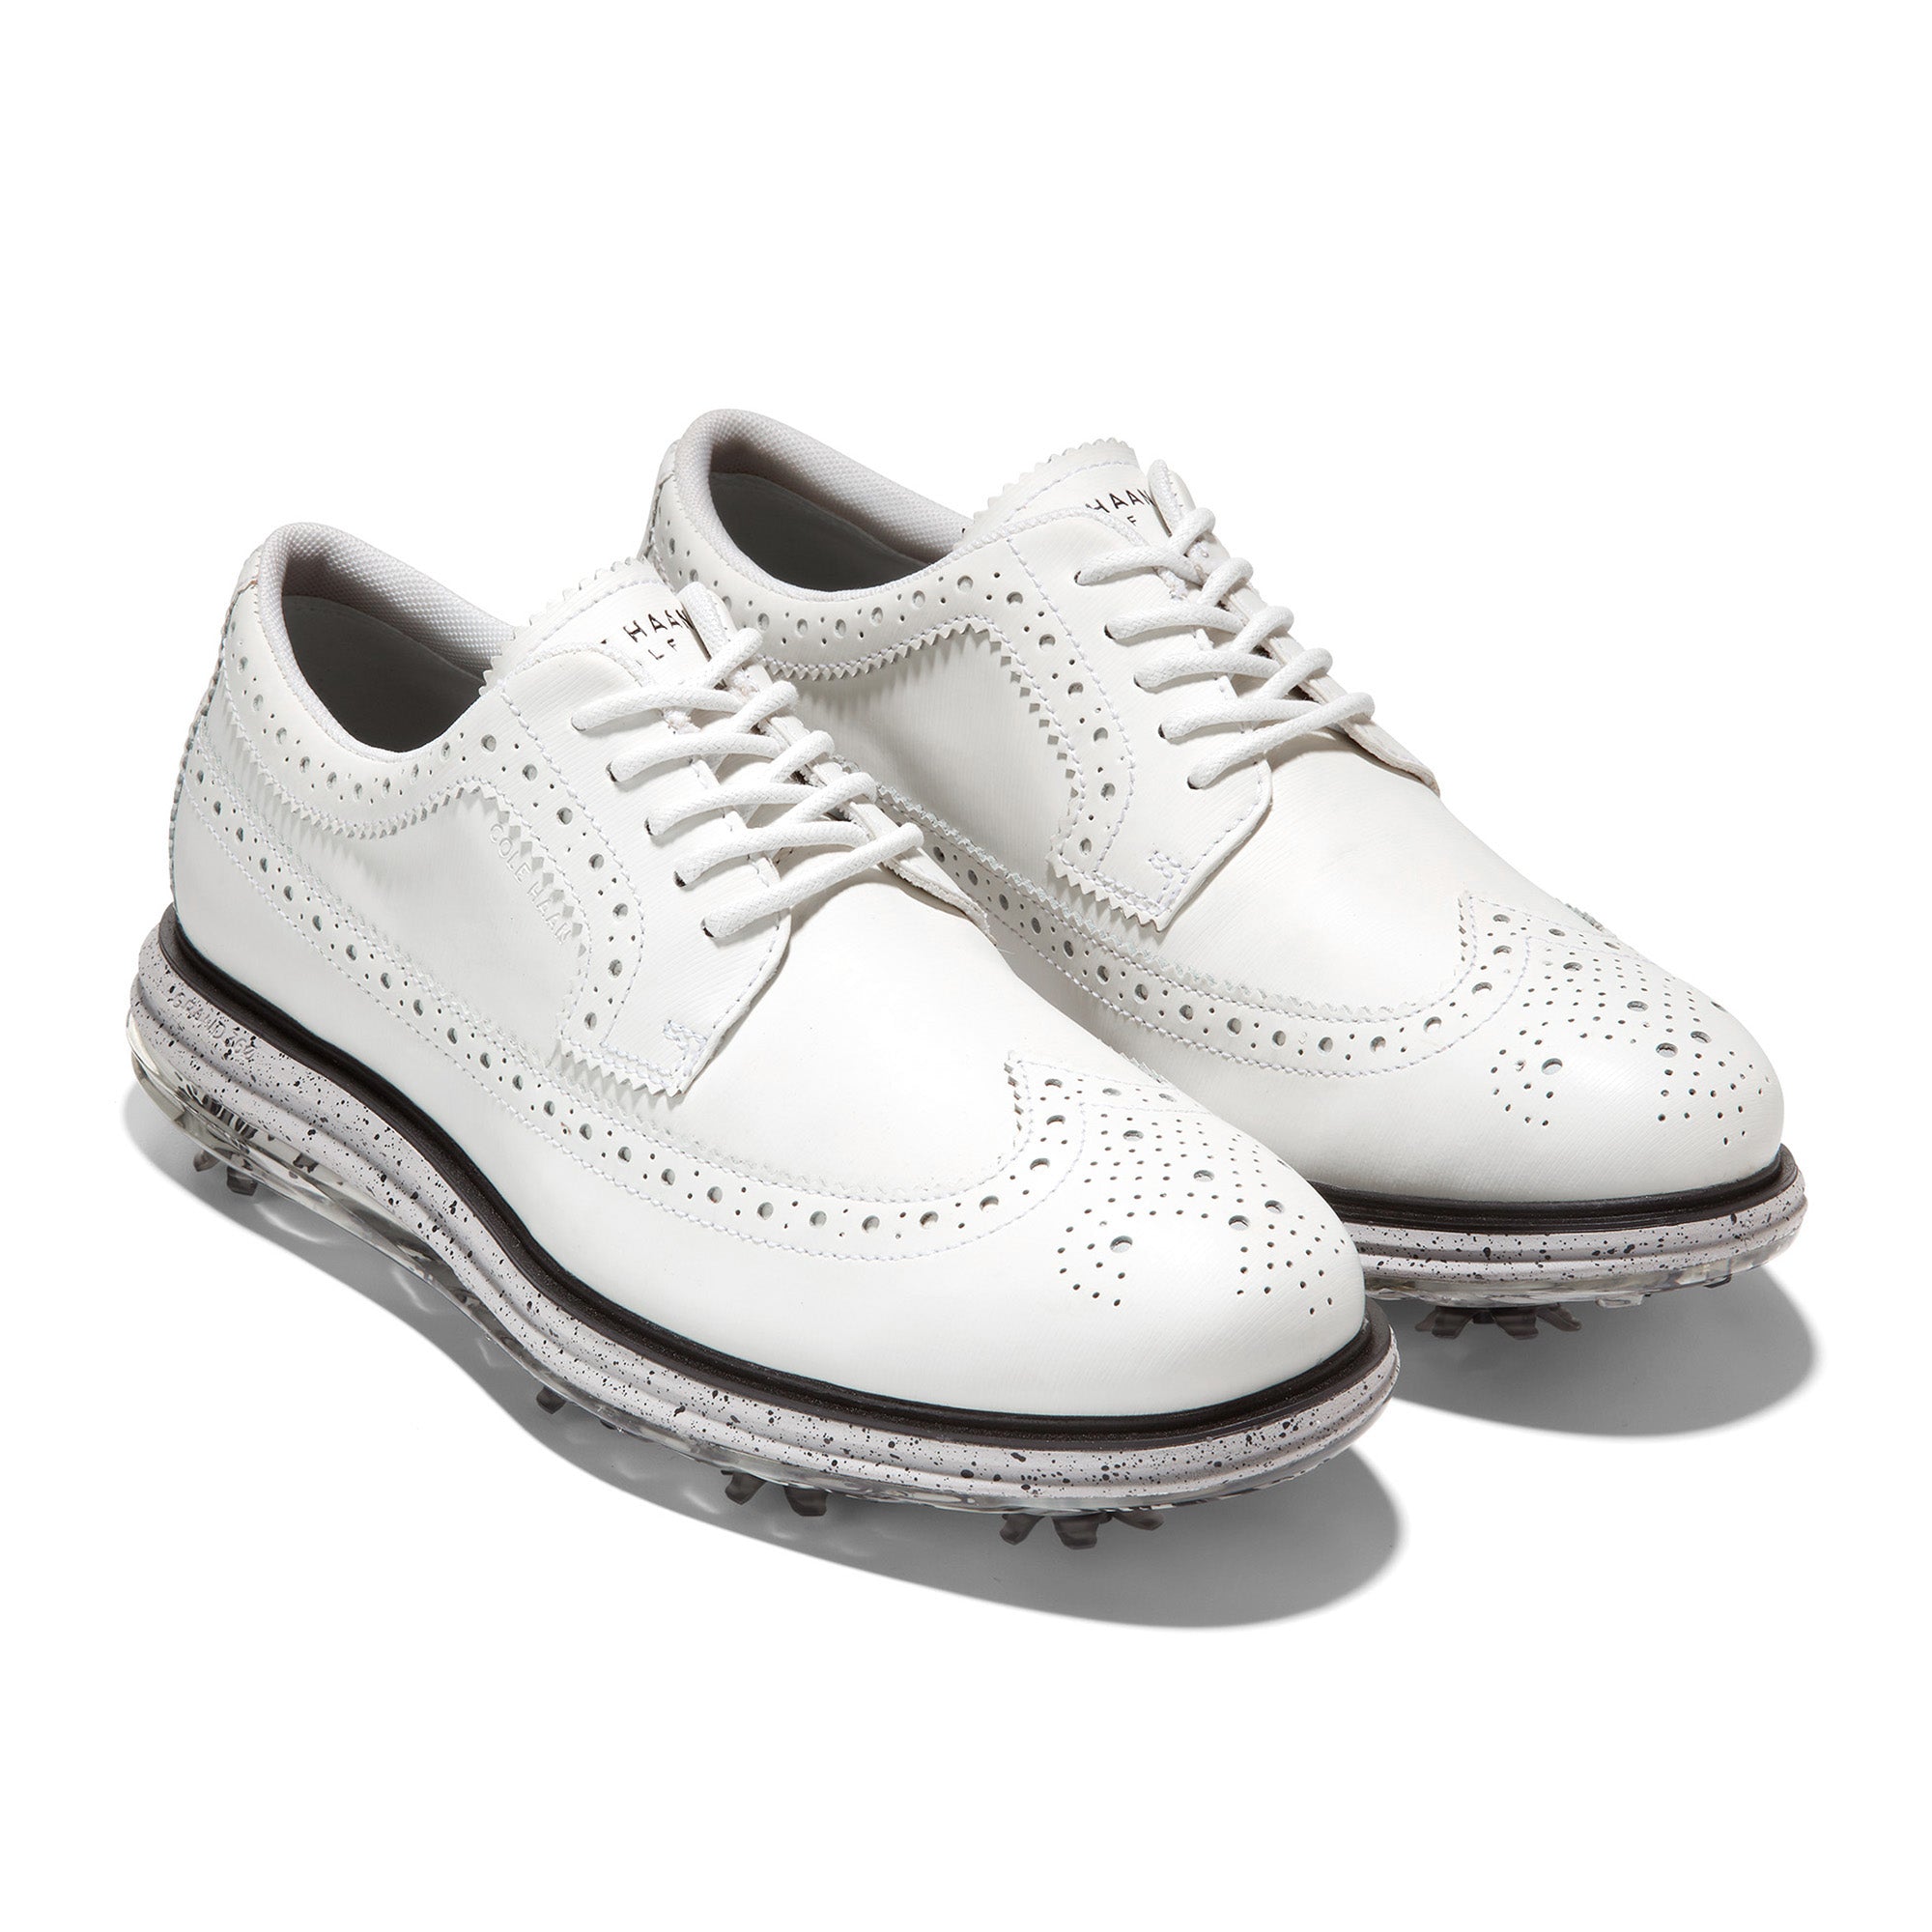 cole-haan-originalgrand-tour-golf-shoes-c36172-white-harbour-mist-tiger-camo